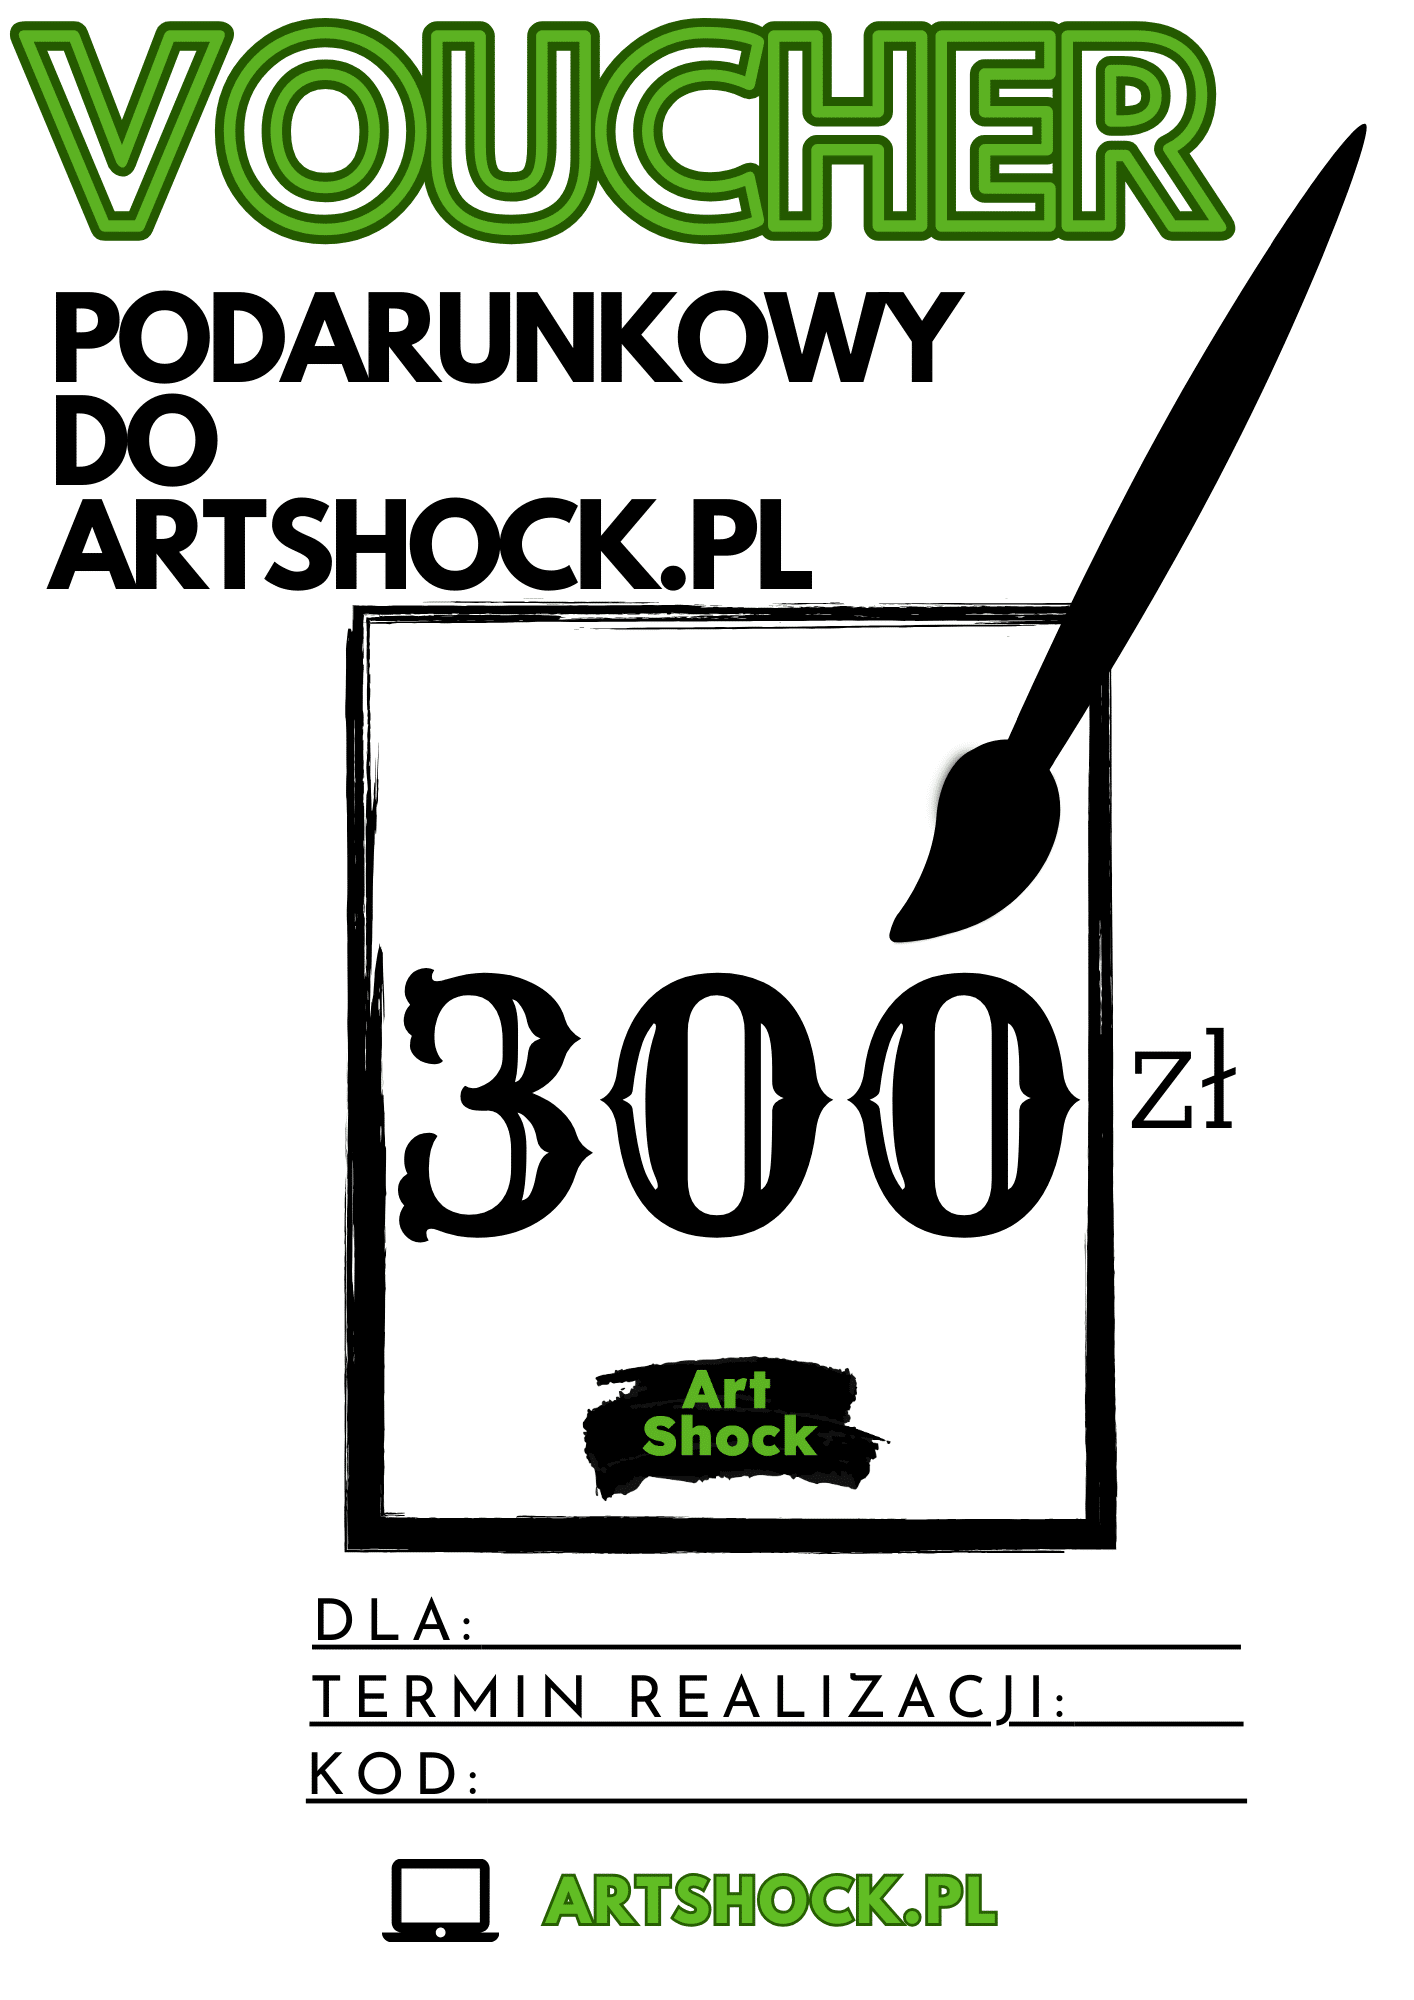 Bon podarunkowy do Artshock.pl 300zł